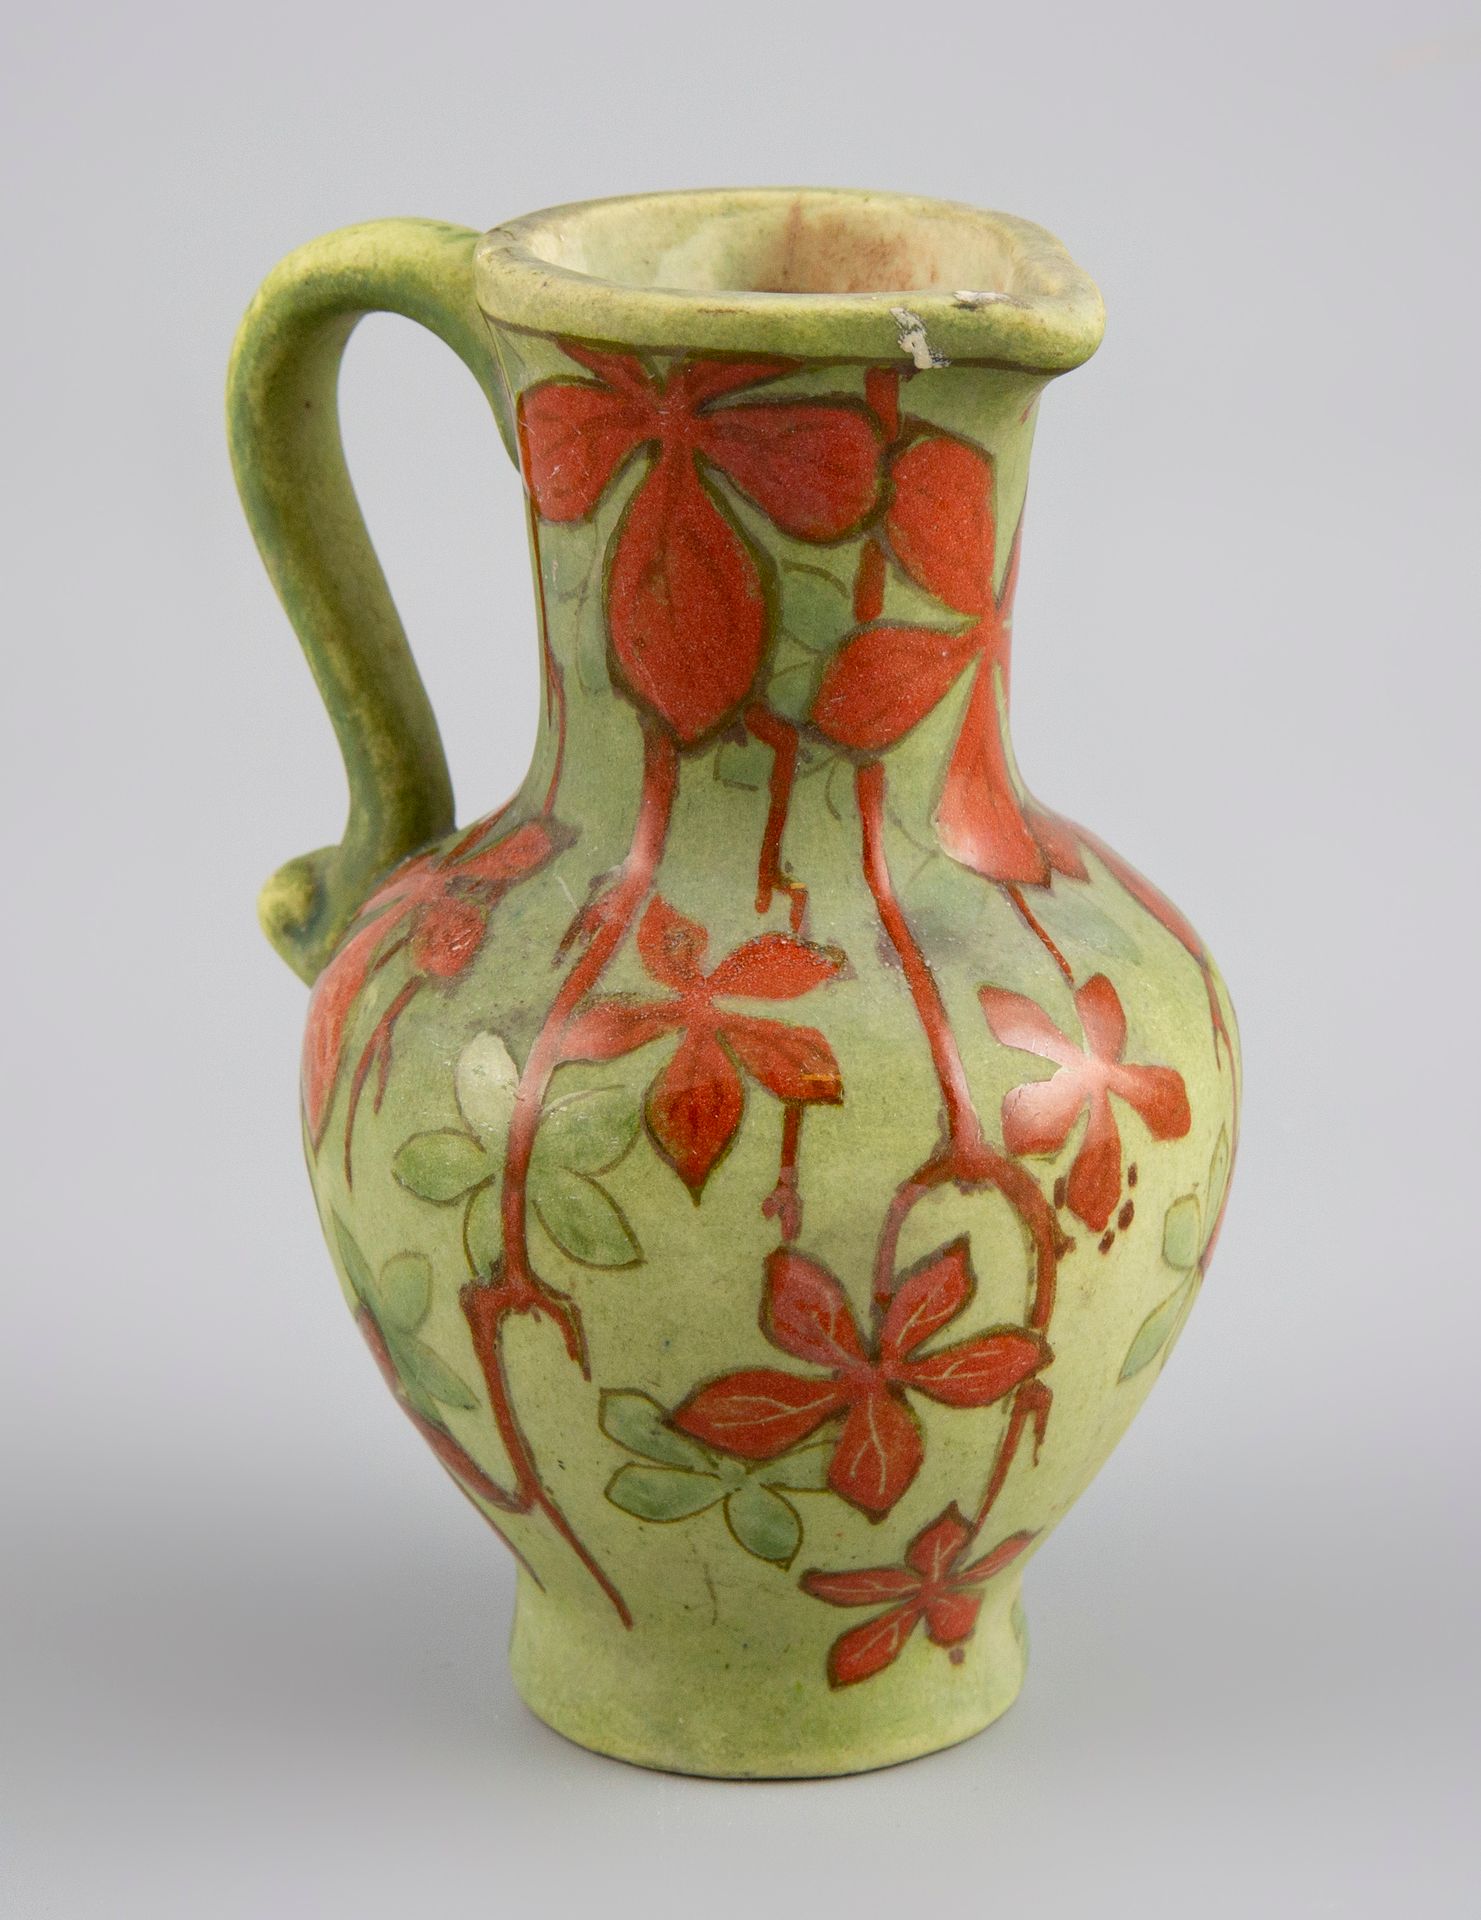 Null 拉赫纳尔。珐琅彩花卉图案的陶瓷壶。高13厘米。